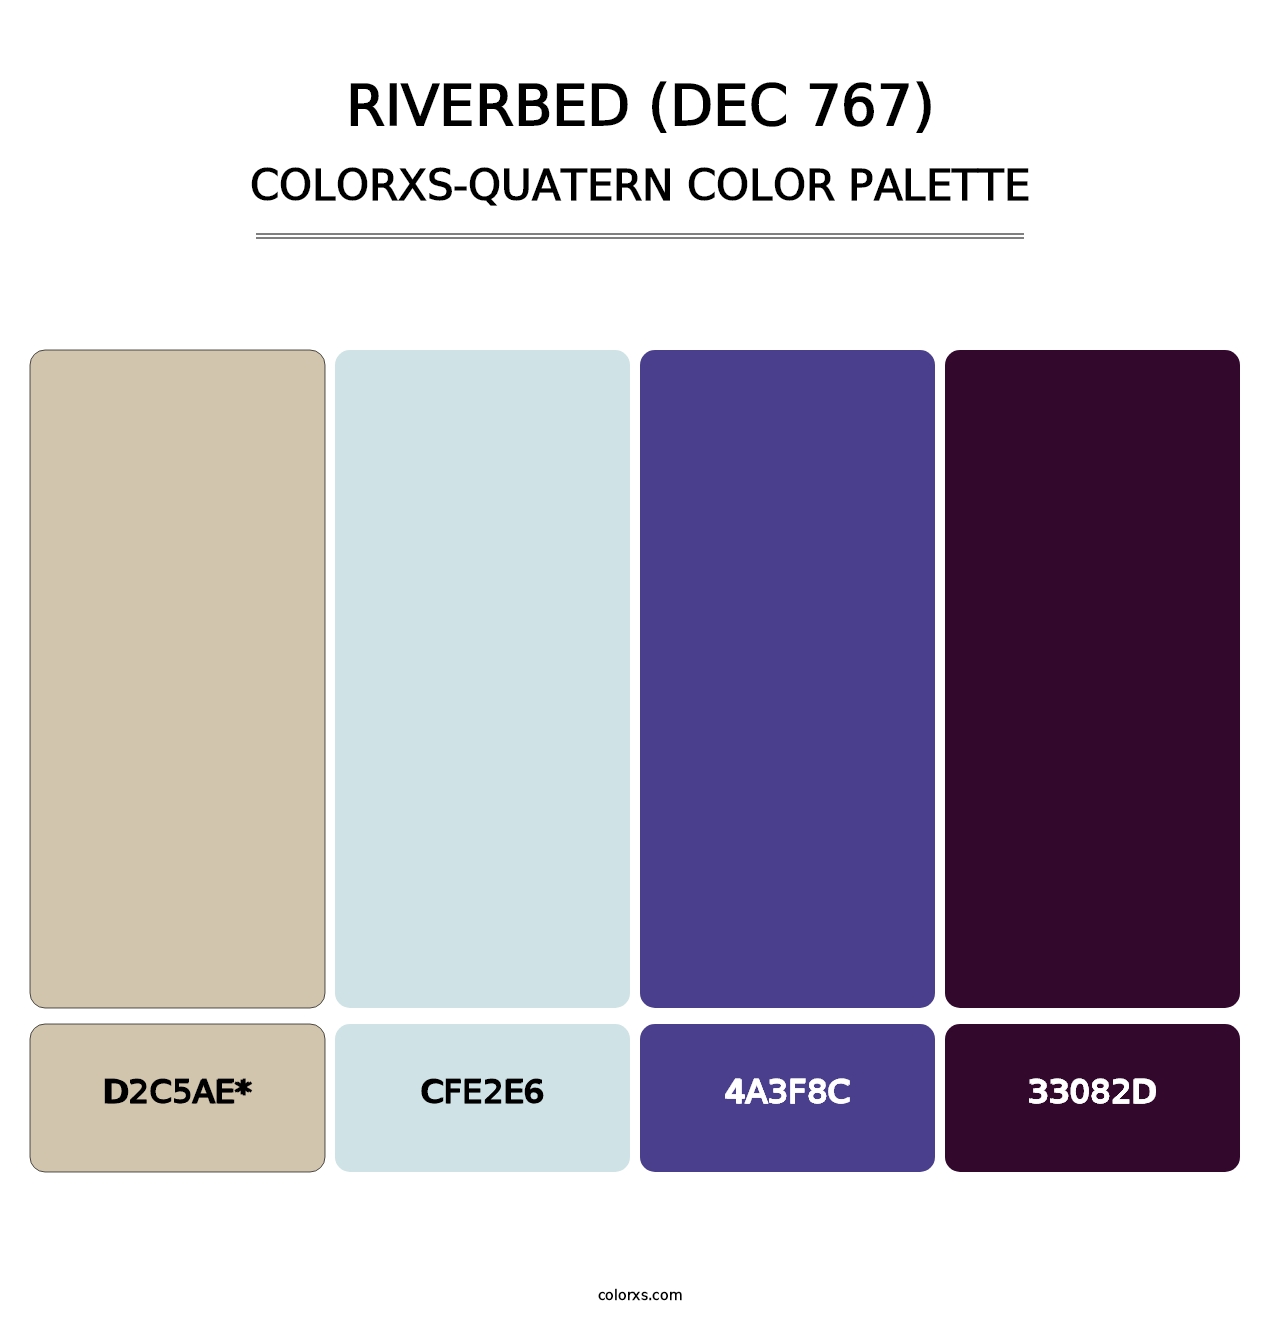 Riverbed (DEC 767) - Colorxs Quatern Palette